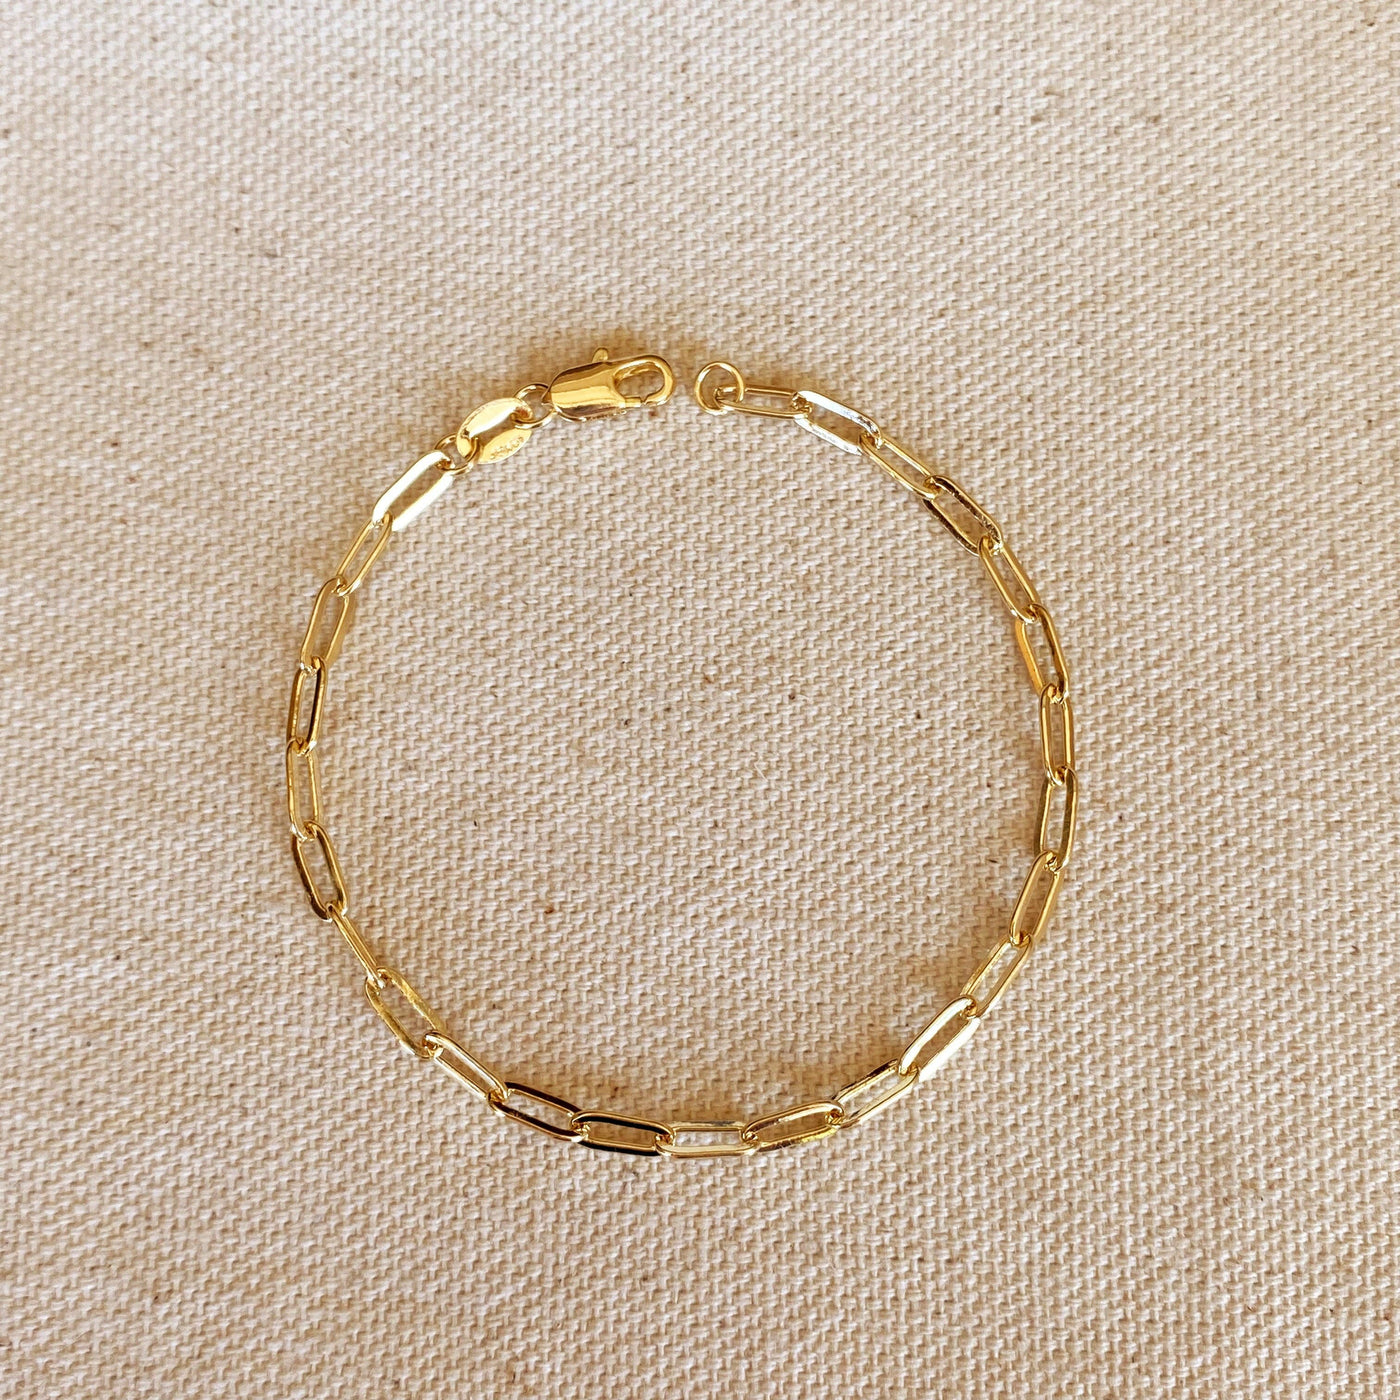 GoldFi - 18k Gold Filled Paperclip Bracelet